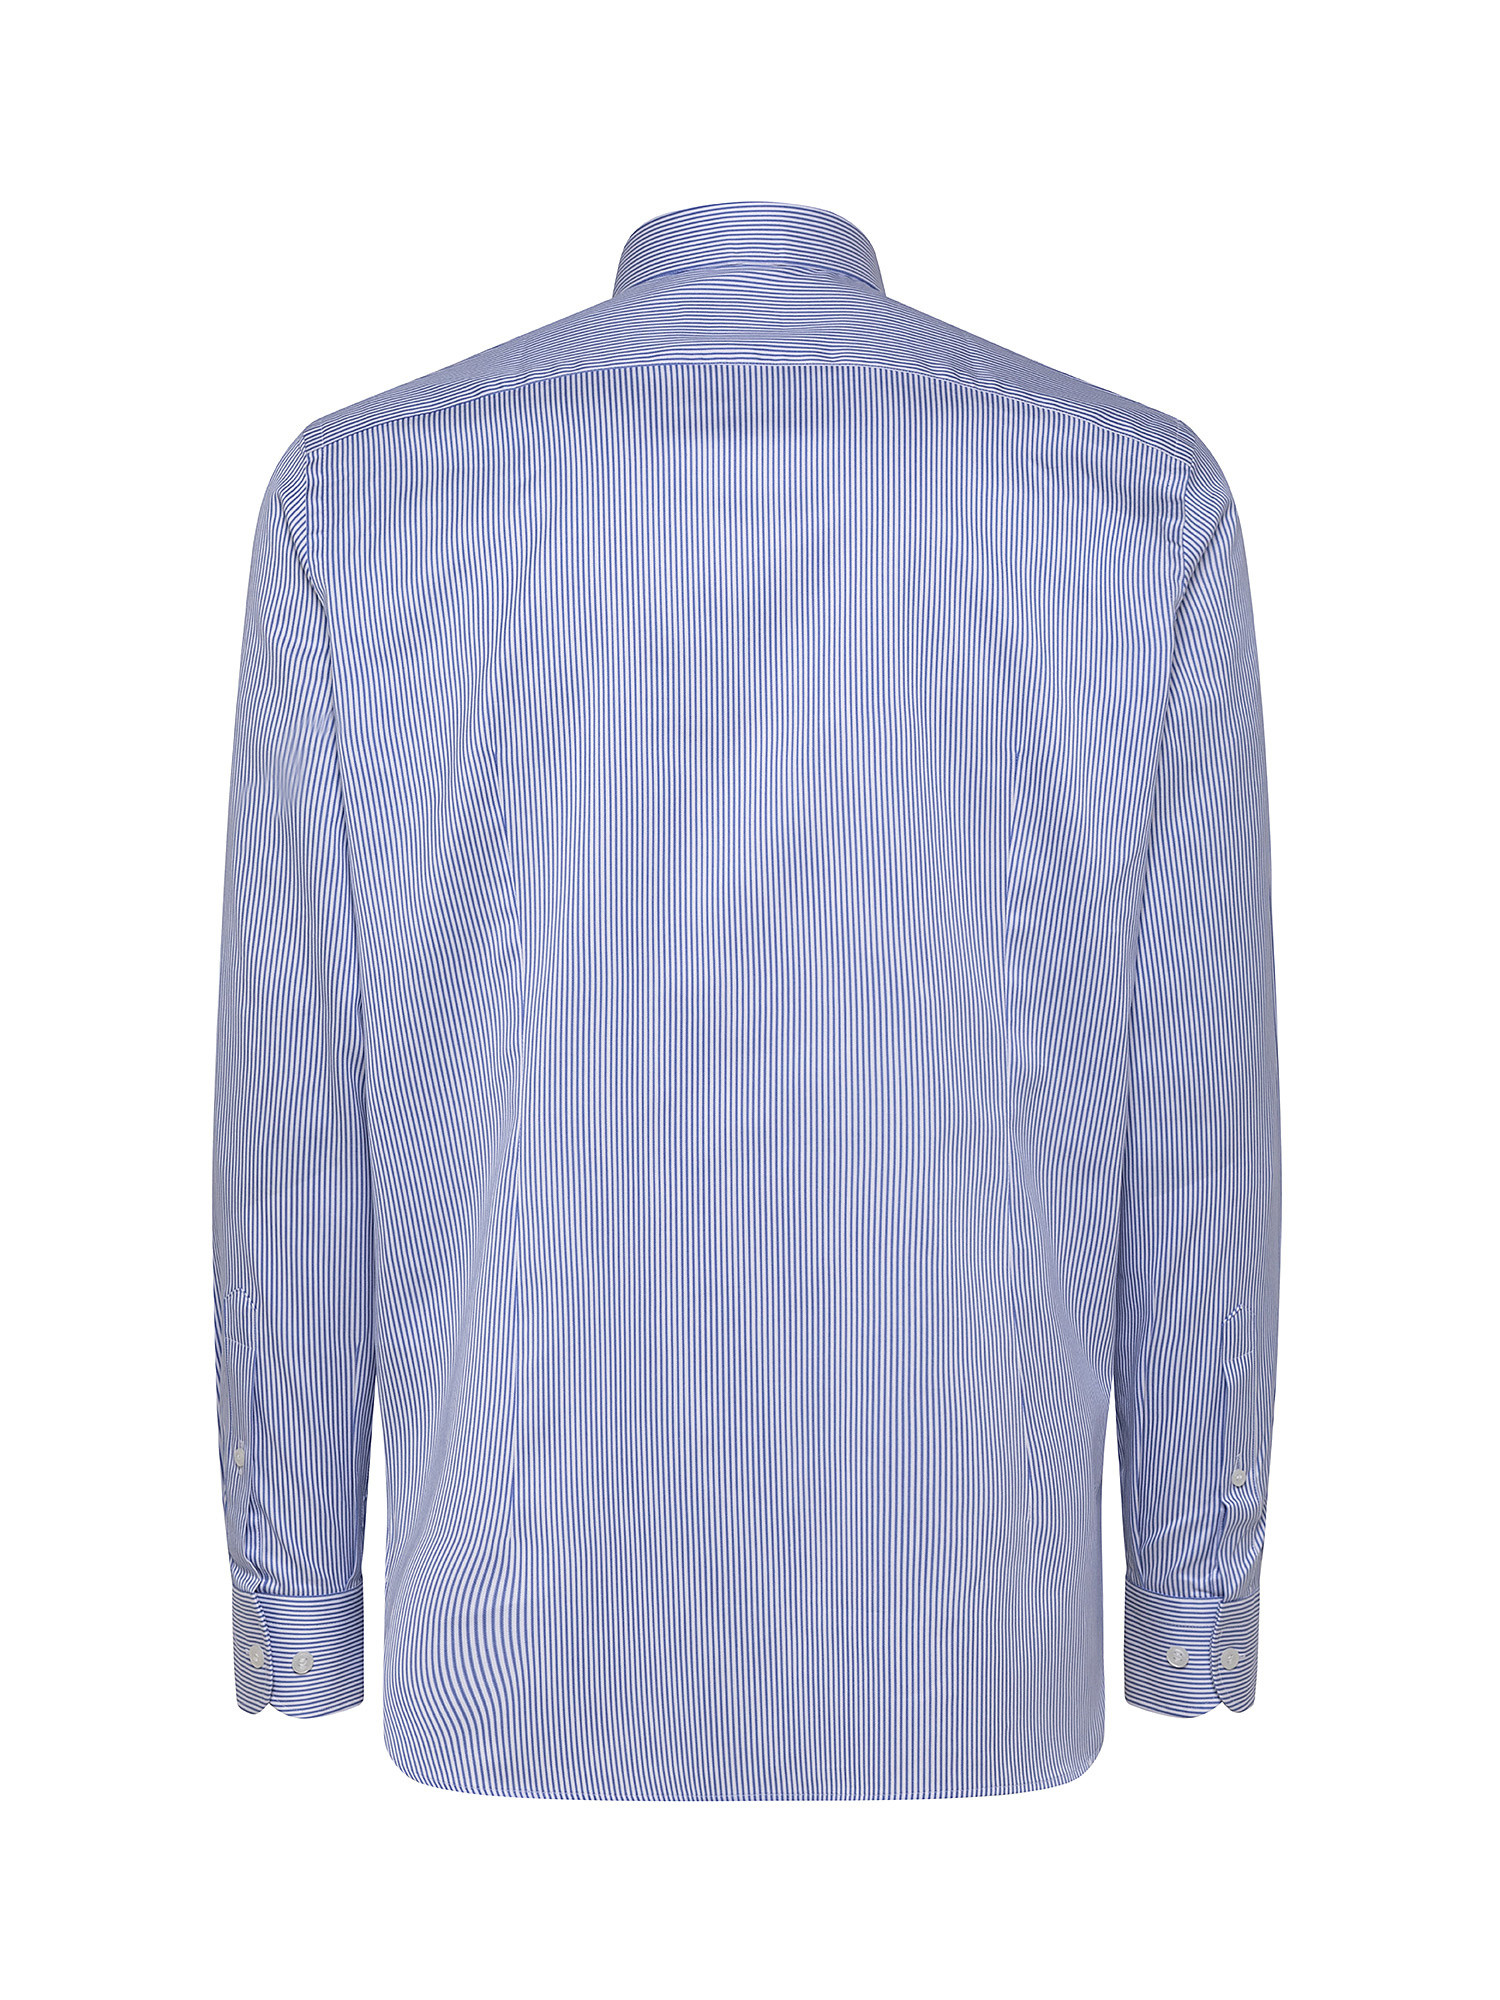 Camicia slim fit twill di cotone, Azzurro, large image number 1